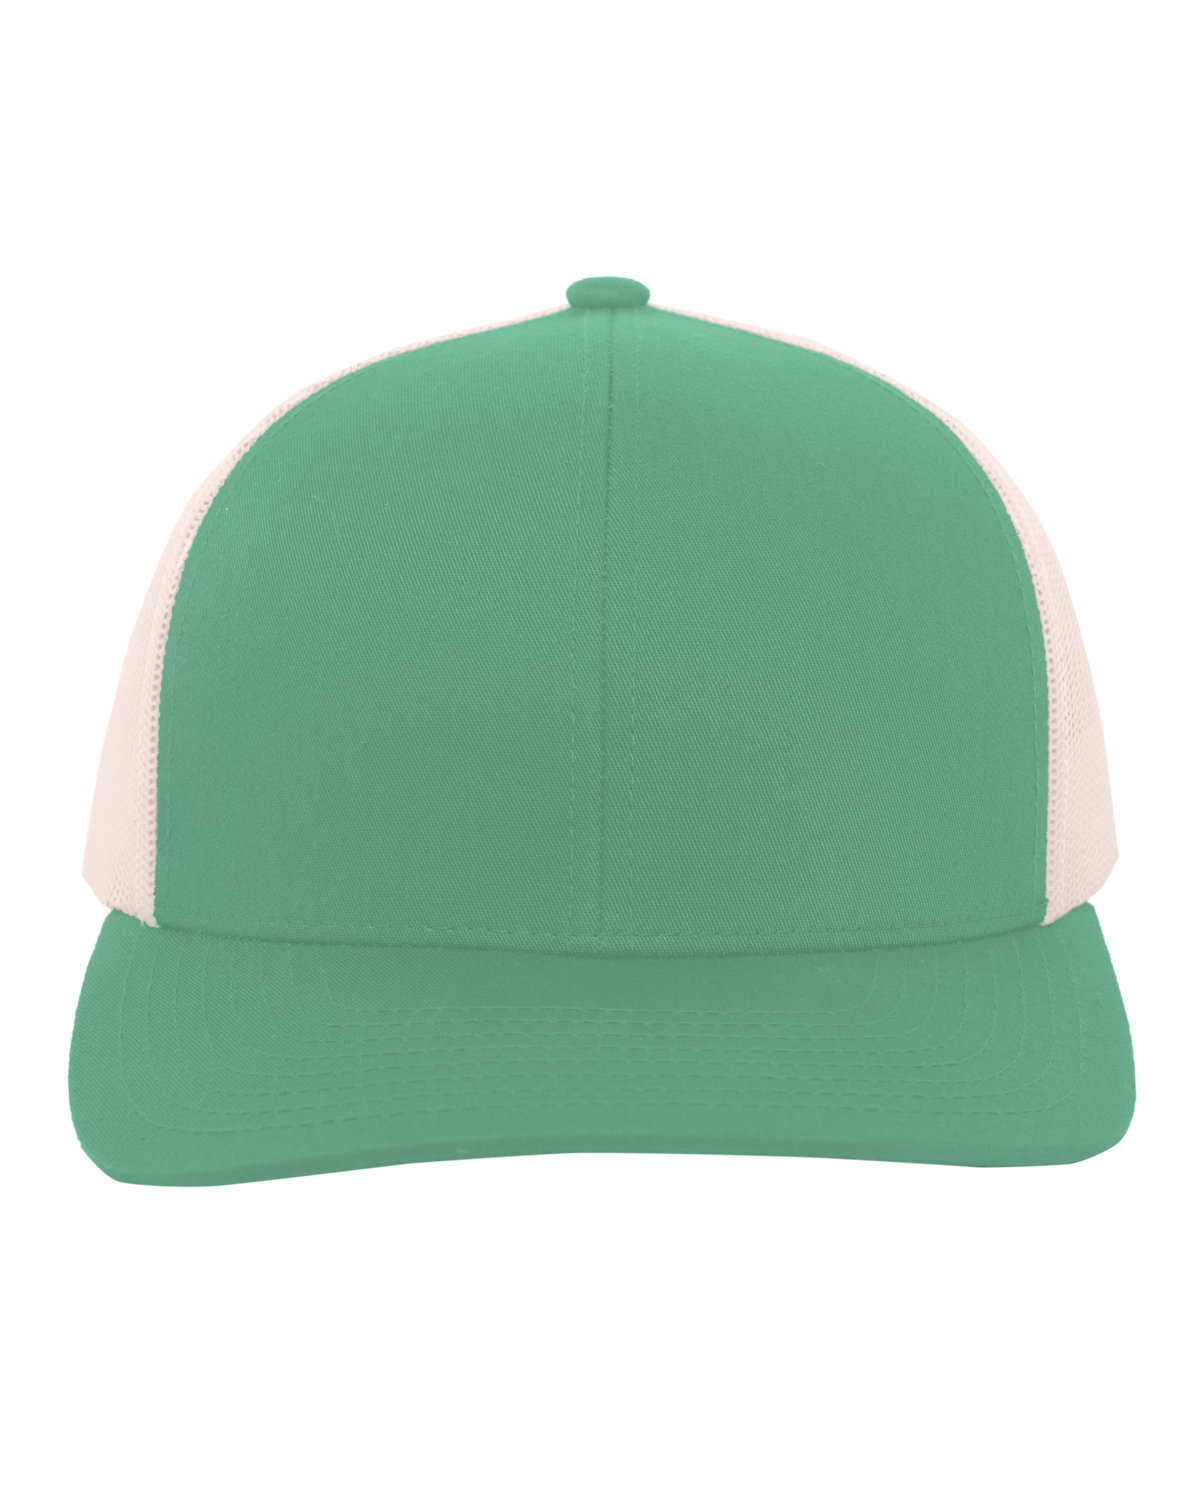 Pacific Headwear Trucker Snapback Hat TEAL/ BEIGE 